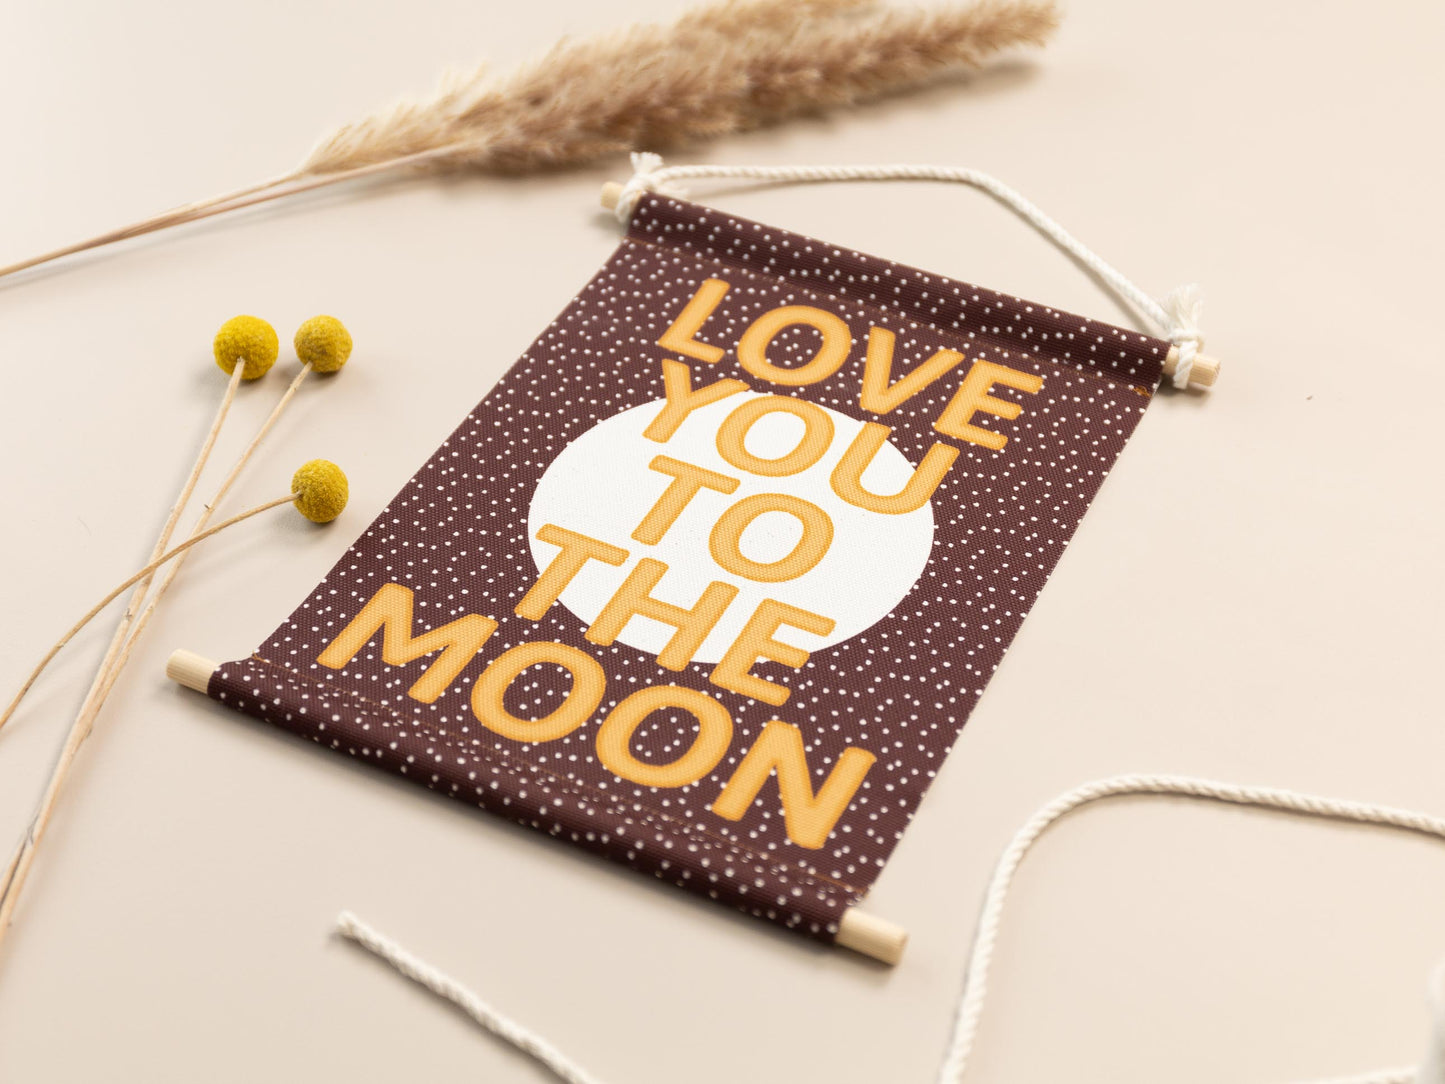 Love You To The Moon Stoffwimpel für das Kinderzimmer